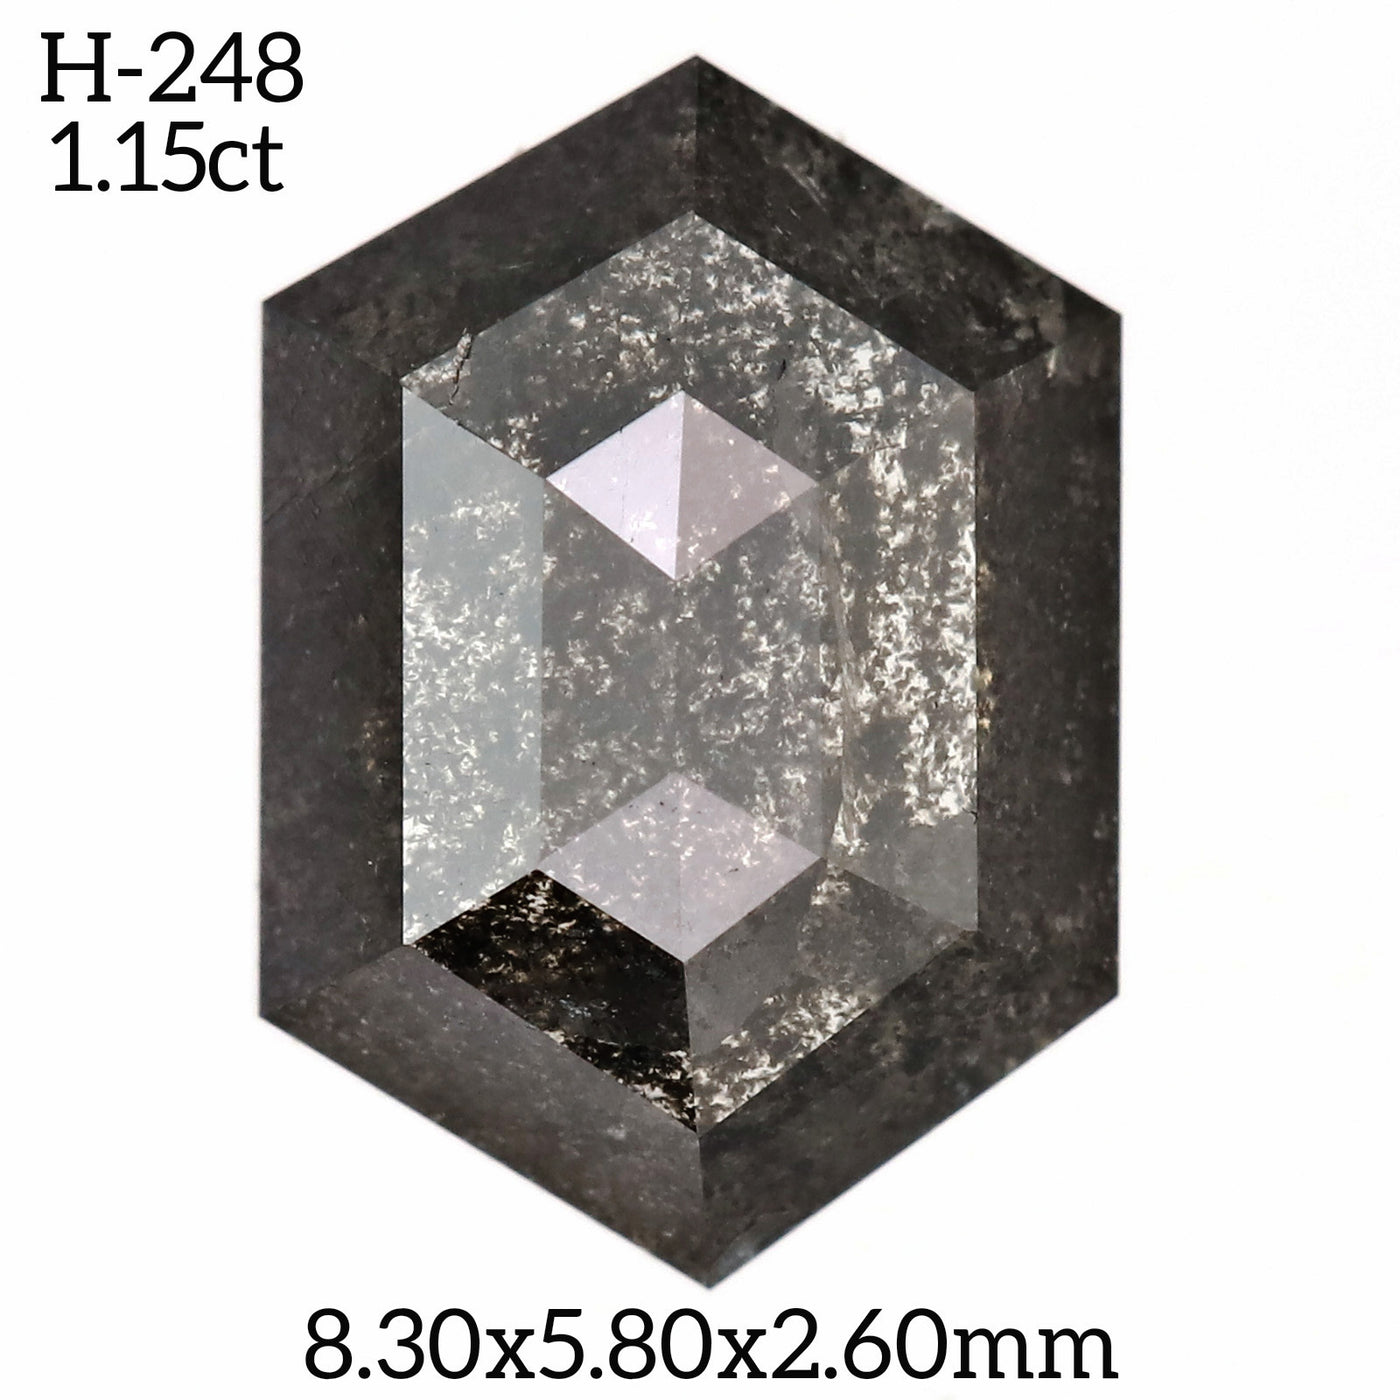 H248 - Salt and pepper hexagon diamond